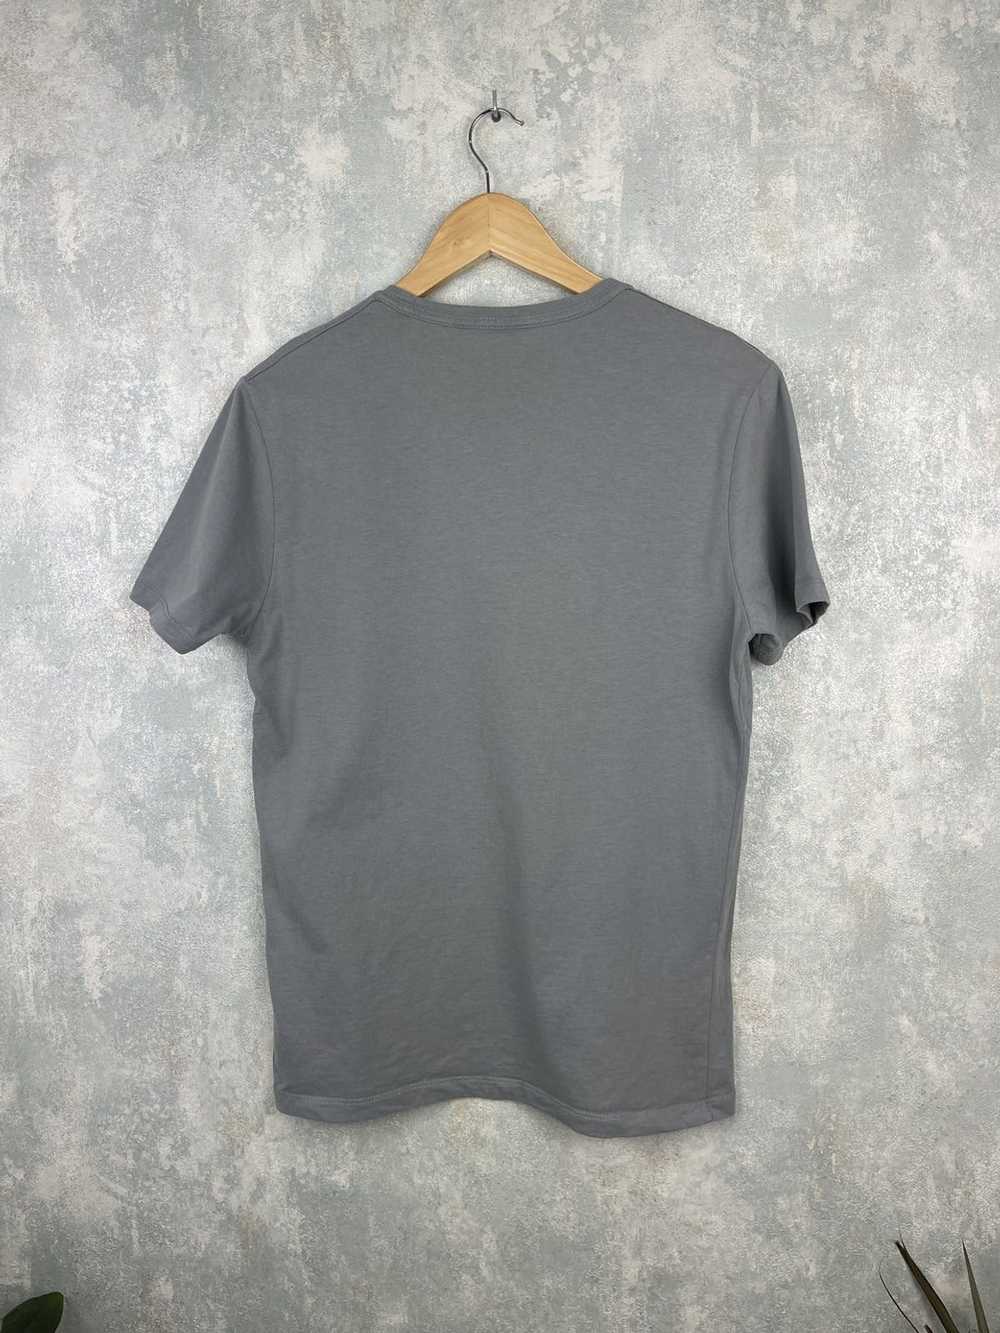 Allsaints AllSaints Grey T-Shirt - image 5